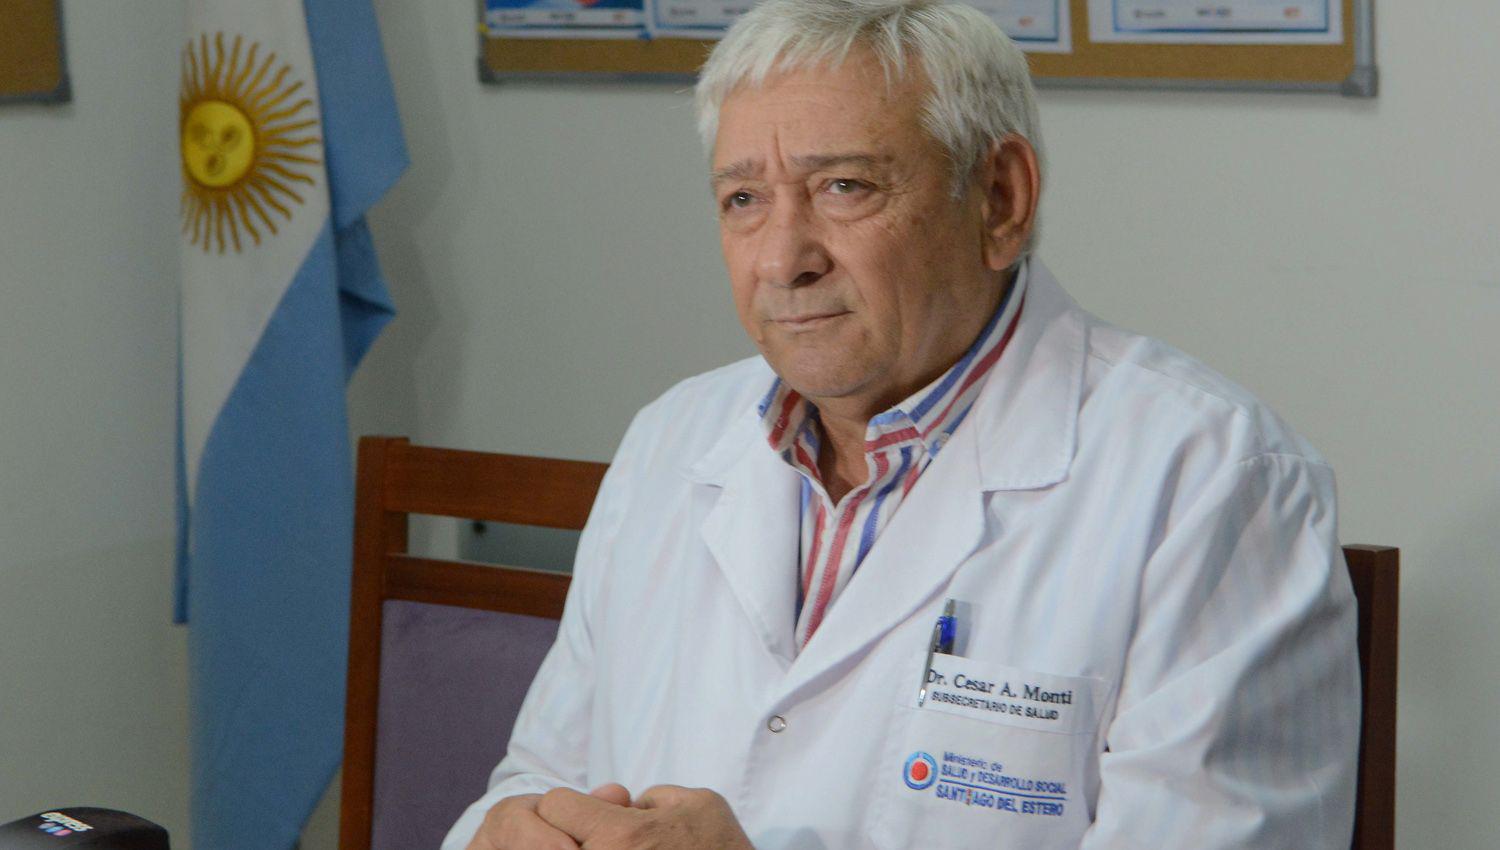 El doctor Ceacutesar Monti explicoacute que  los pacientes asintomaacuteticos de coronavirus ldquosiacute pueden contagiarrdquo